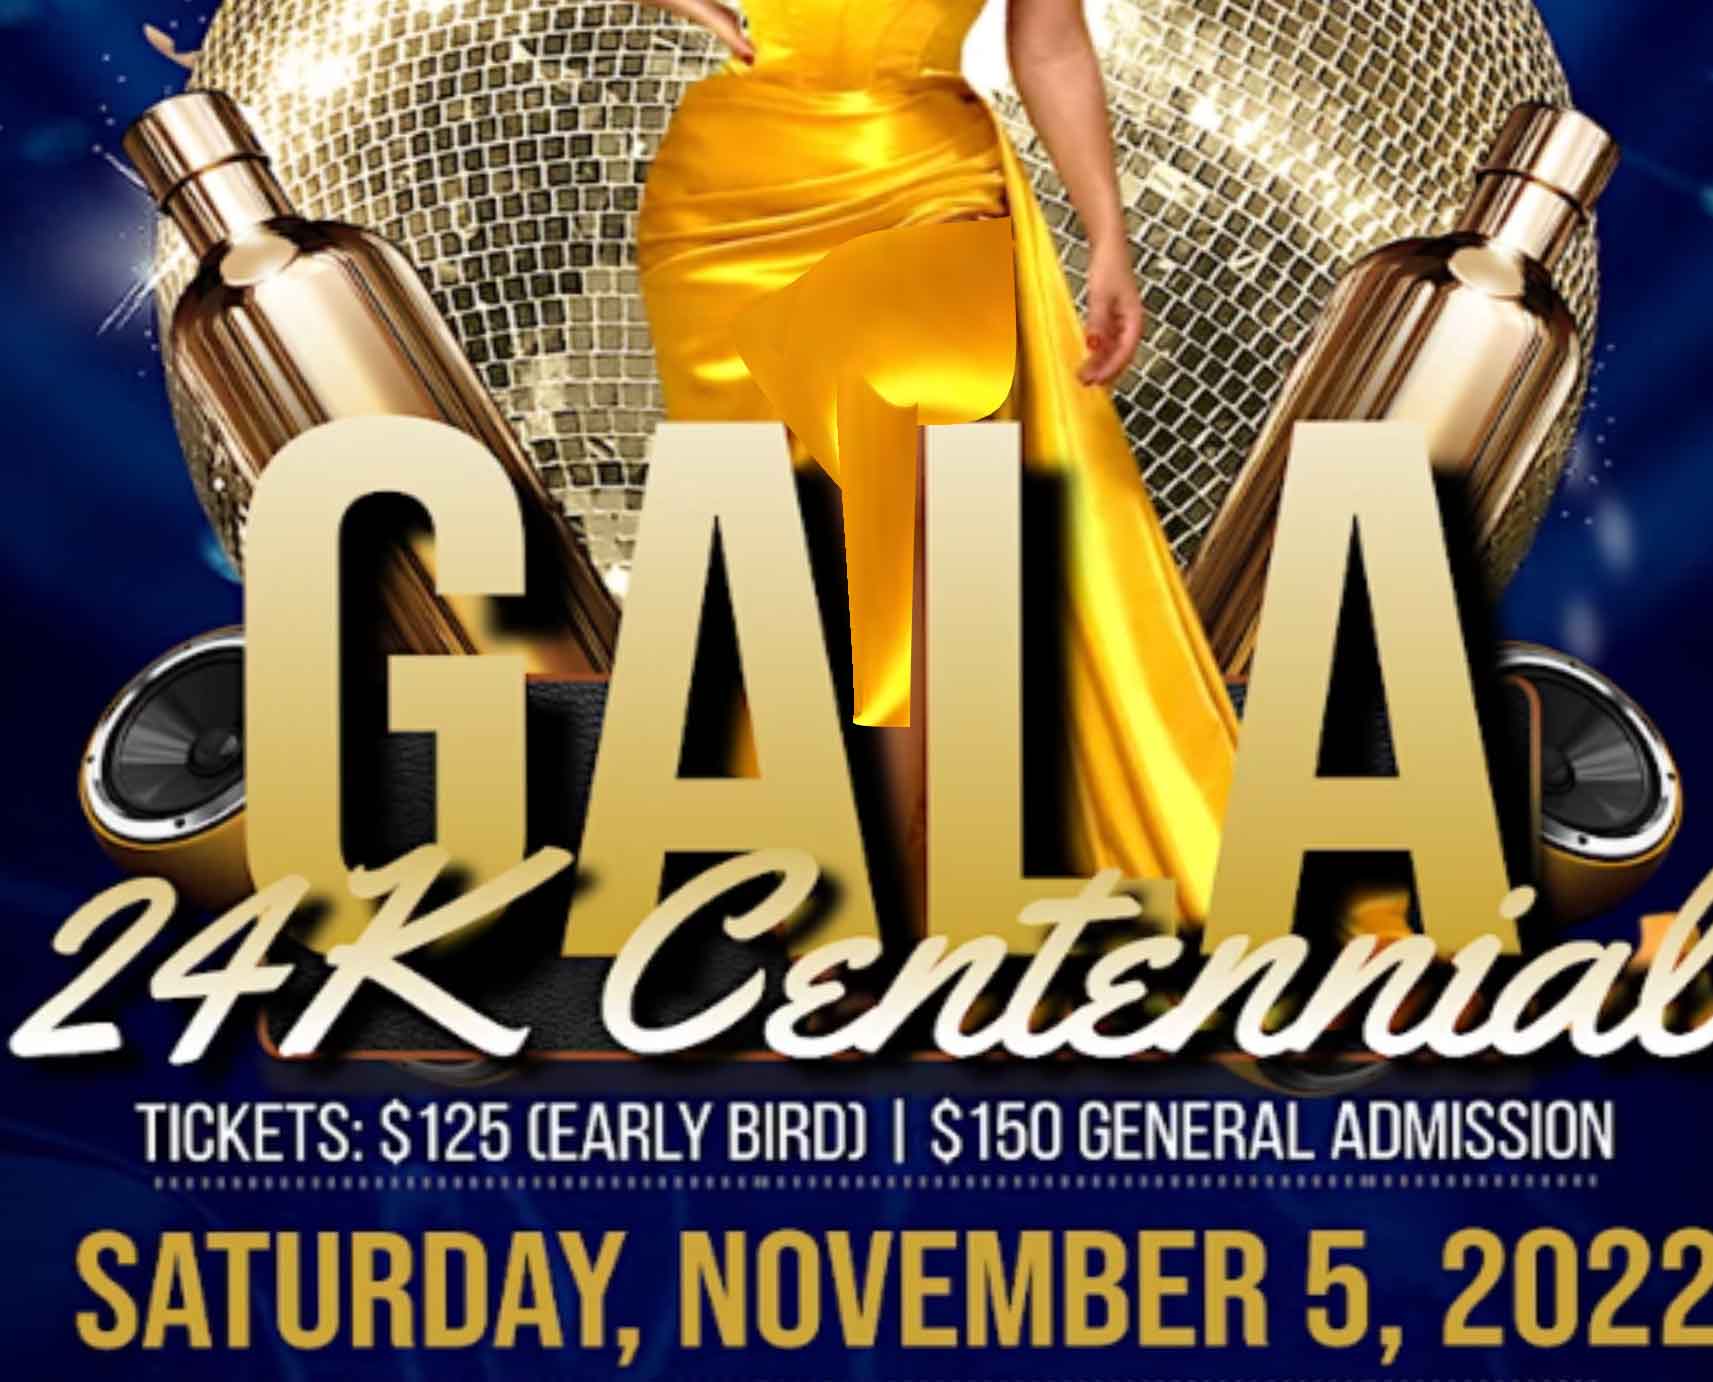 24KT Centennial Gala hosted